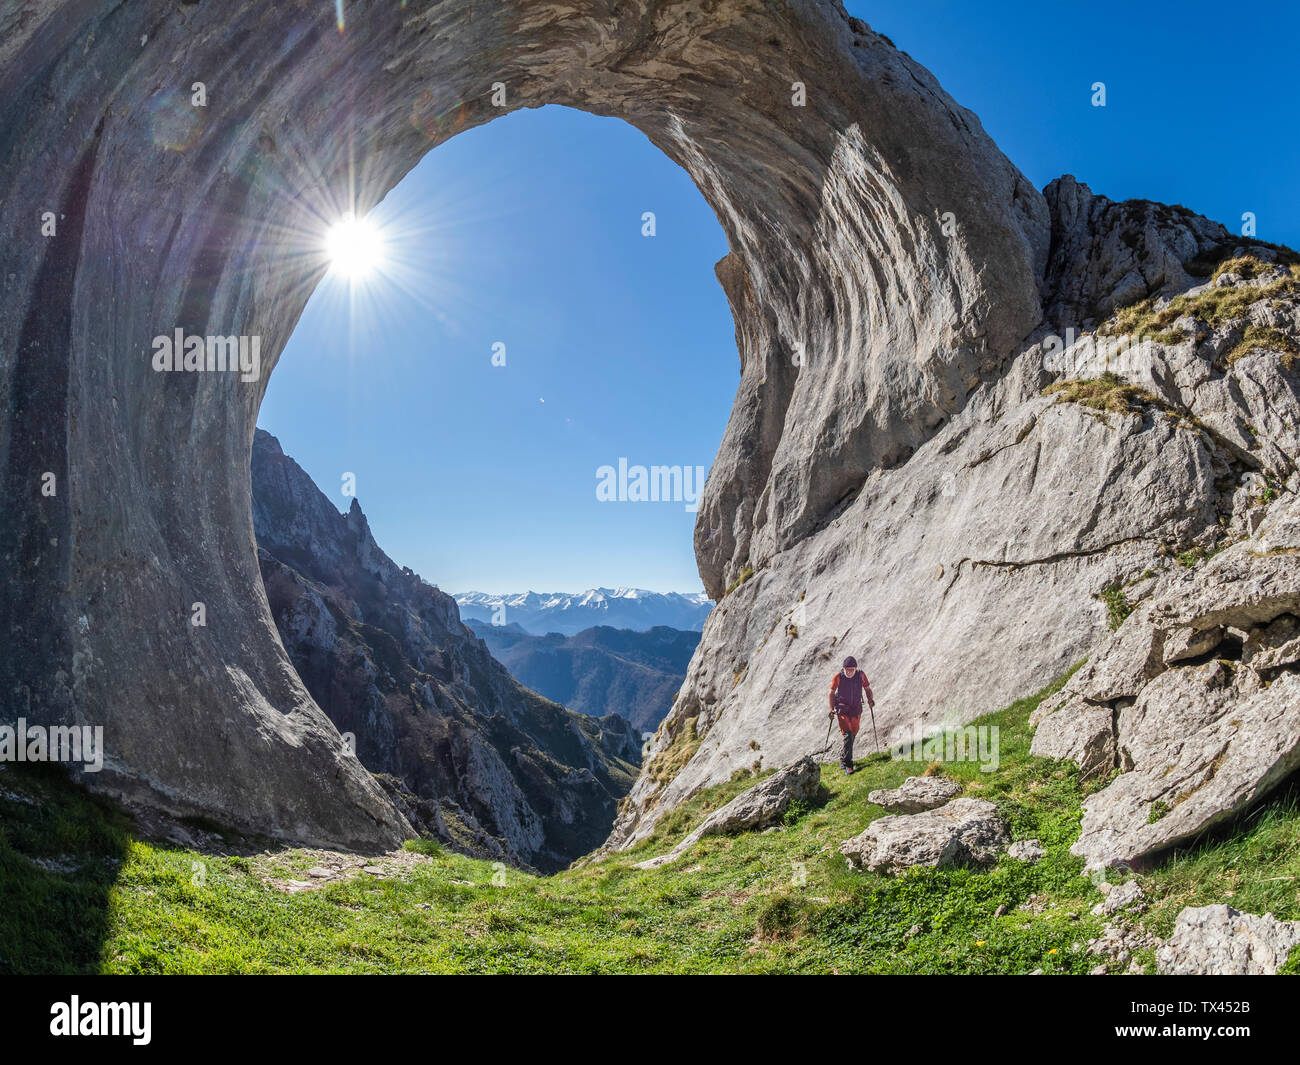 Spain, Asturia, Pena Mea, Ojo de buey, hiker against the sun Stock Photo